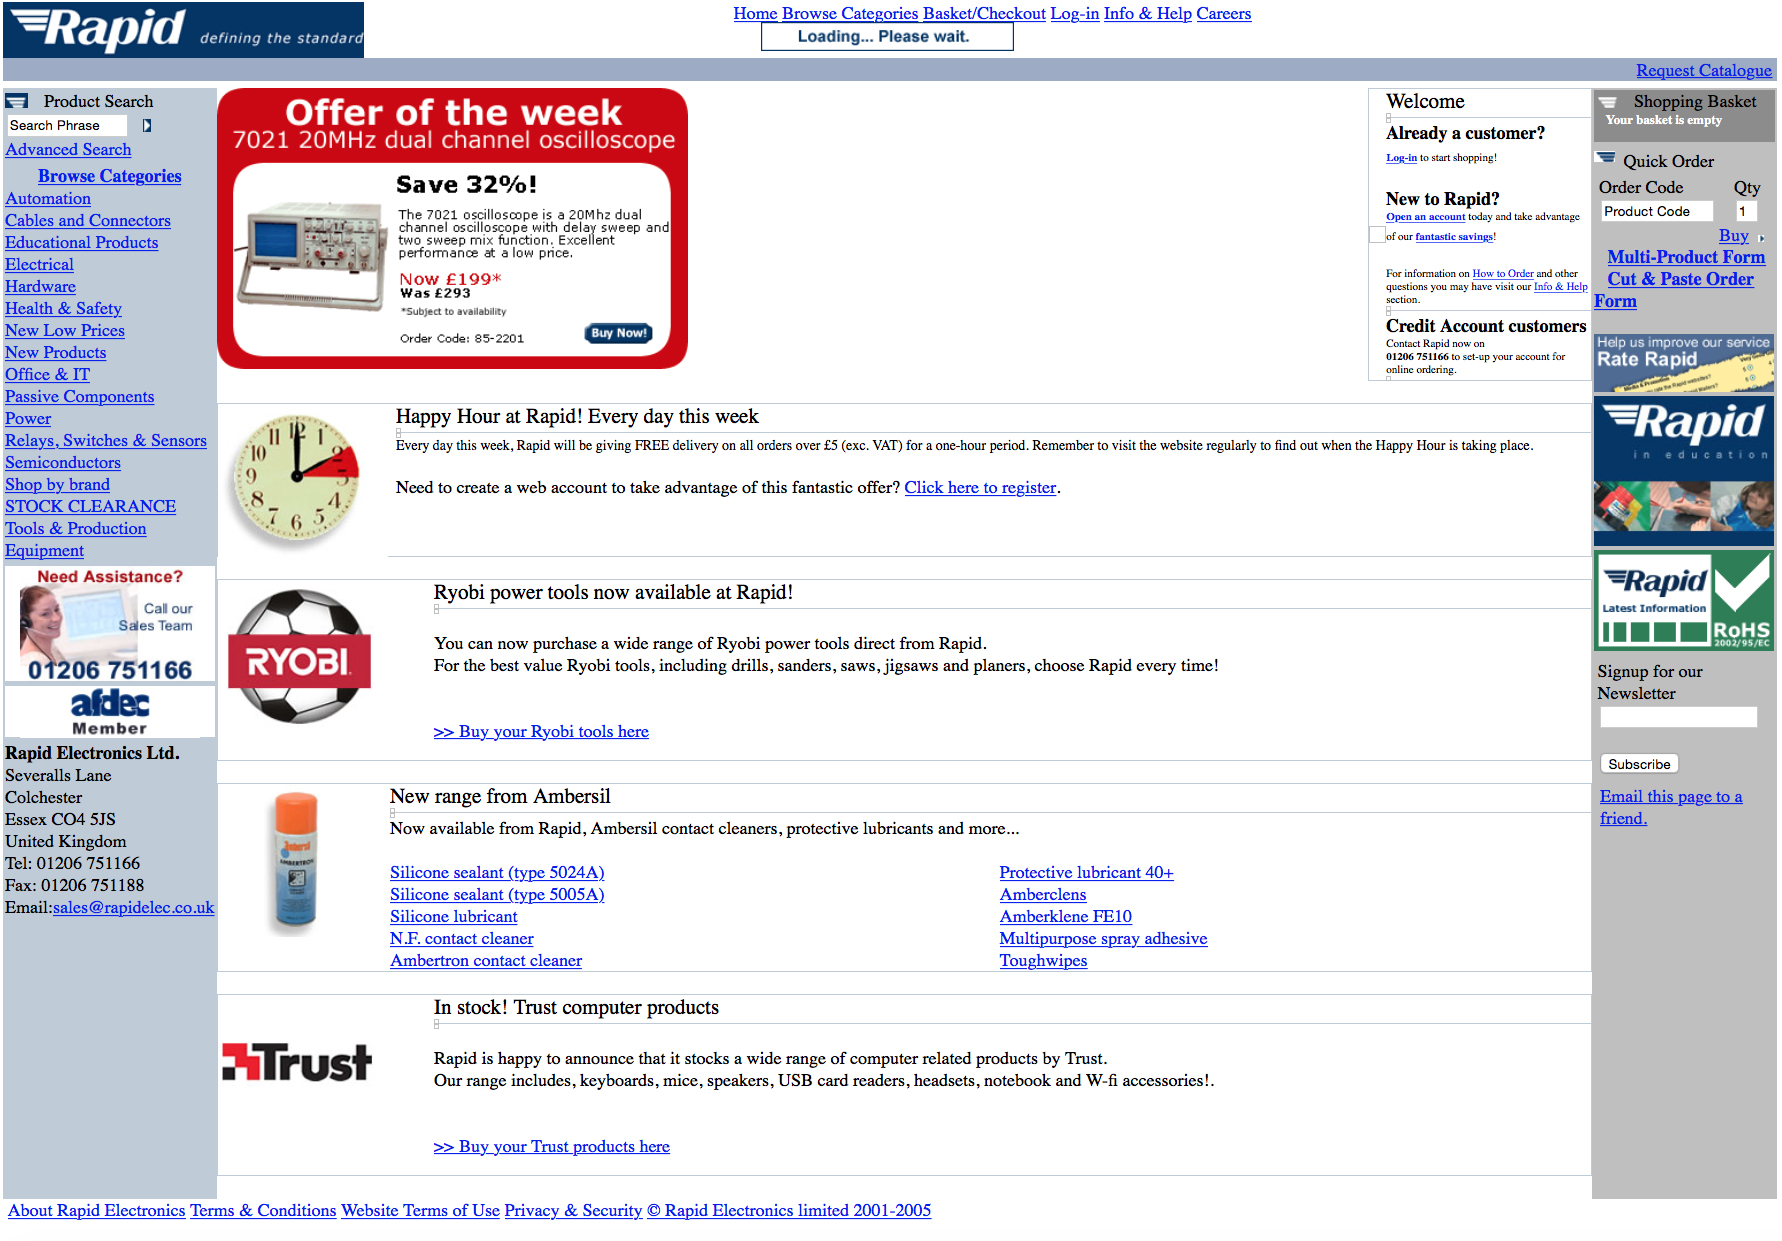 Rapid's website in 2006